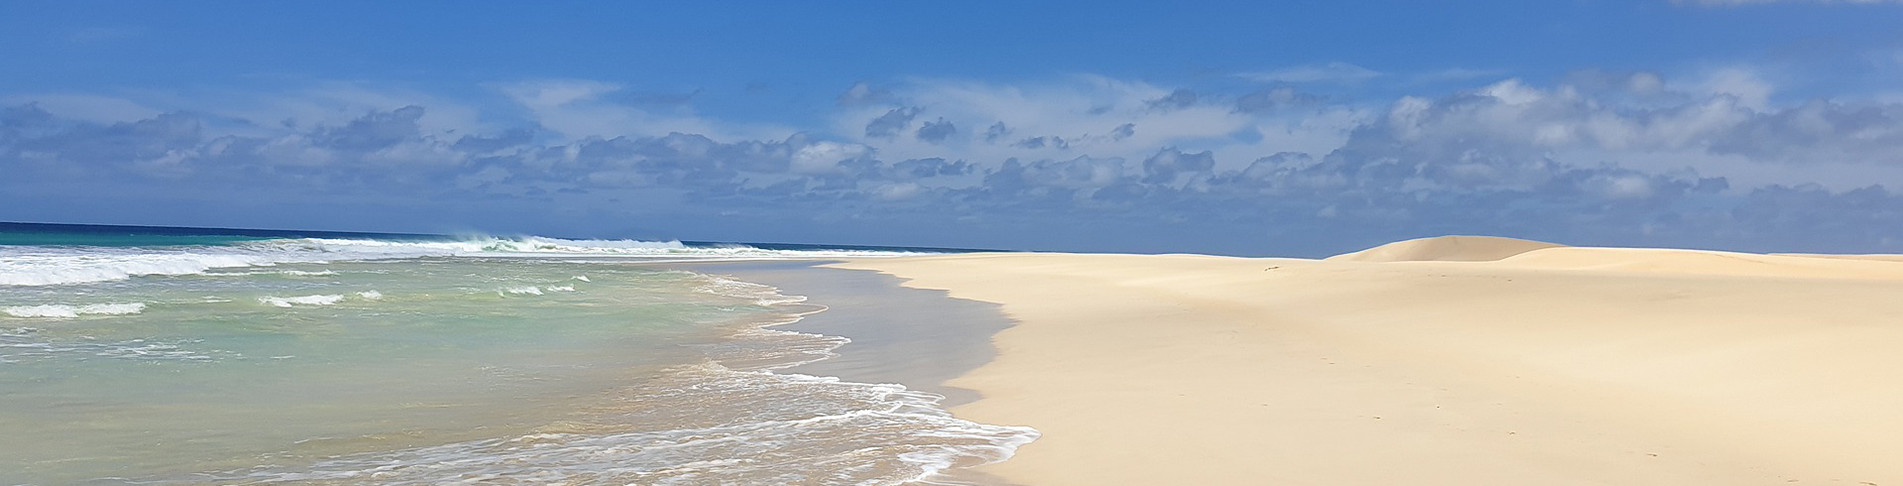 Strand auf den kapverdischen Inseln